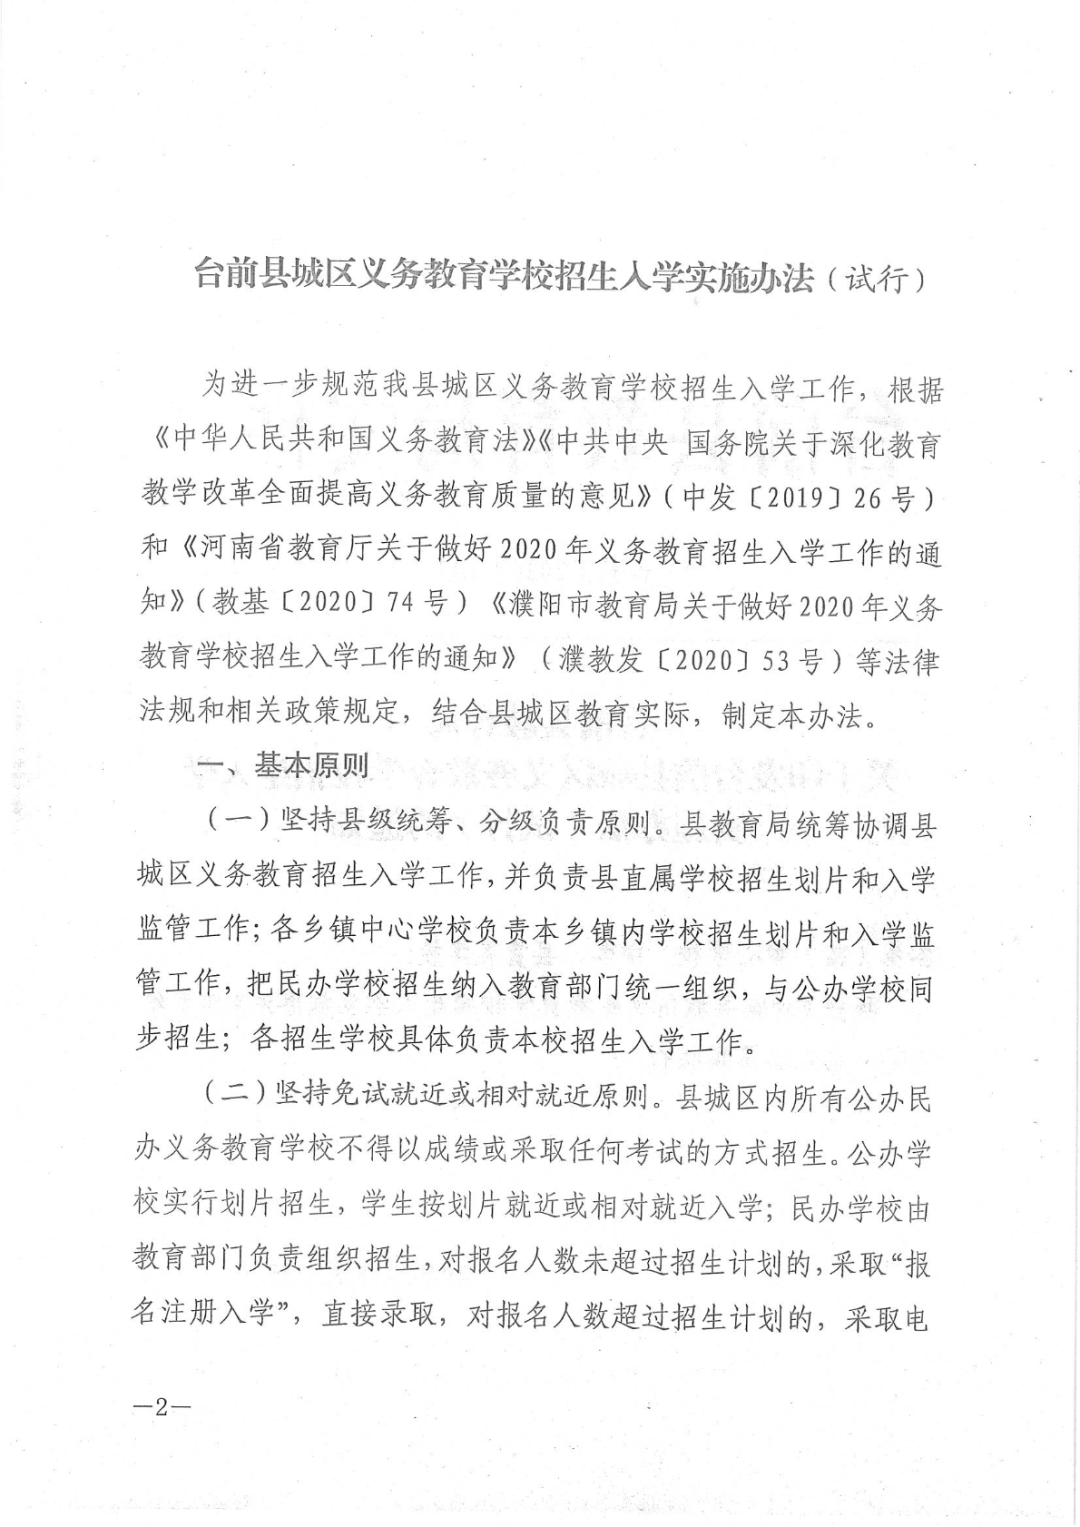 【招聘信息】人事专员详细地址:濮阳市台前县电商物流园岗位要求:职位